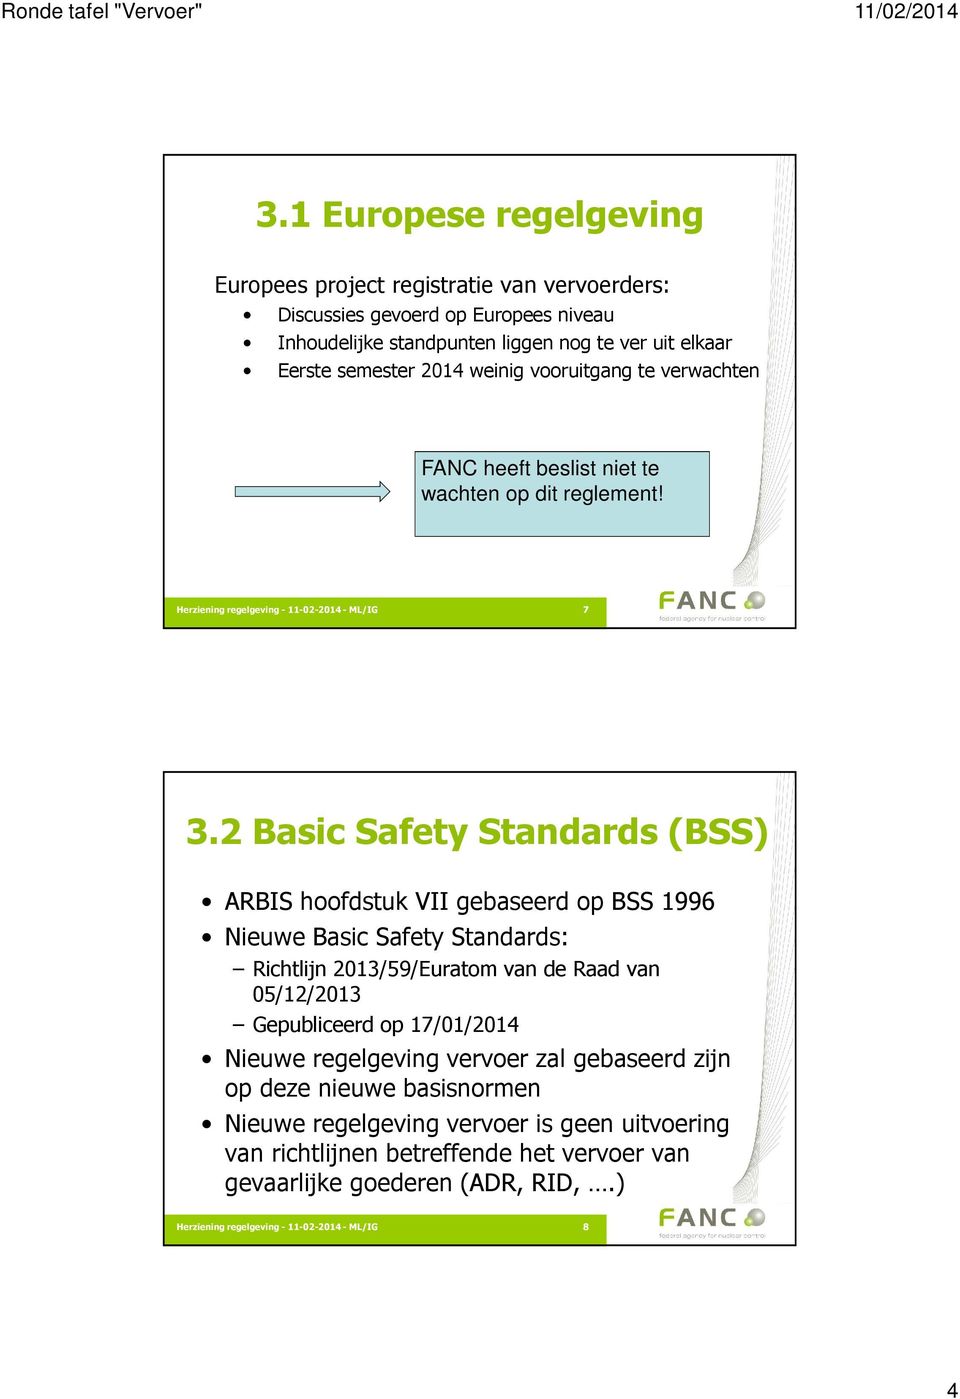 2 Basic Safety Standards (BSS) ARBIS hoofdstuk VII gebaseerd op BSS 1996 Nieuwe Basic Safety Standards: Richtlijn 2013/59/Euratom van de Raad van 05/12/2013 Gepubliceerd op 17/01/2014